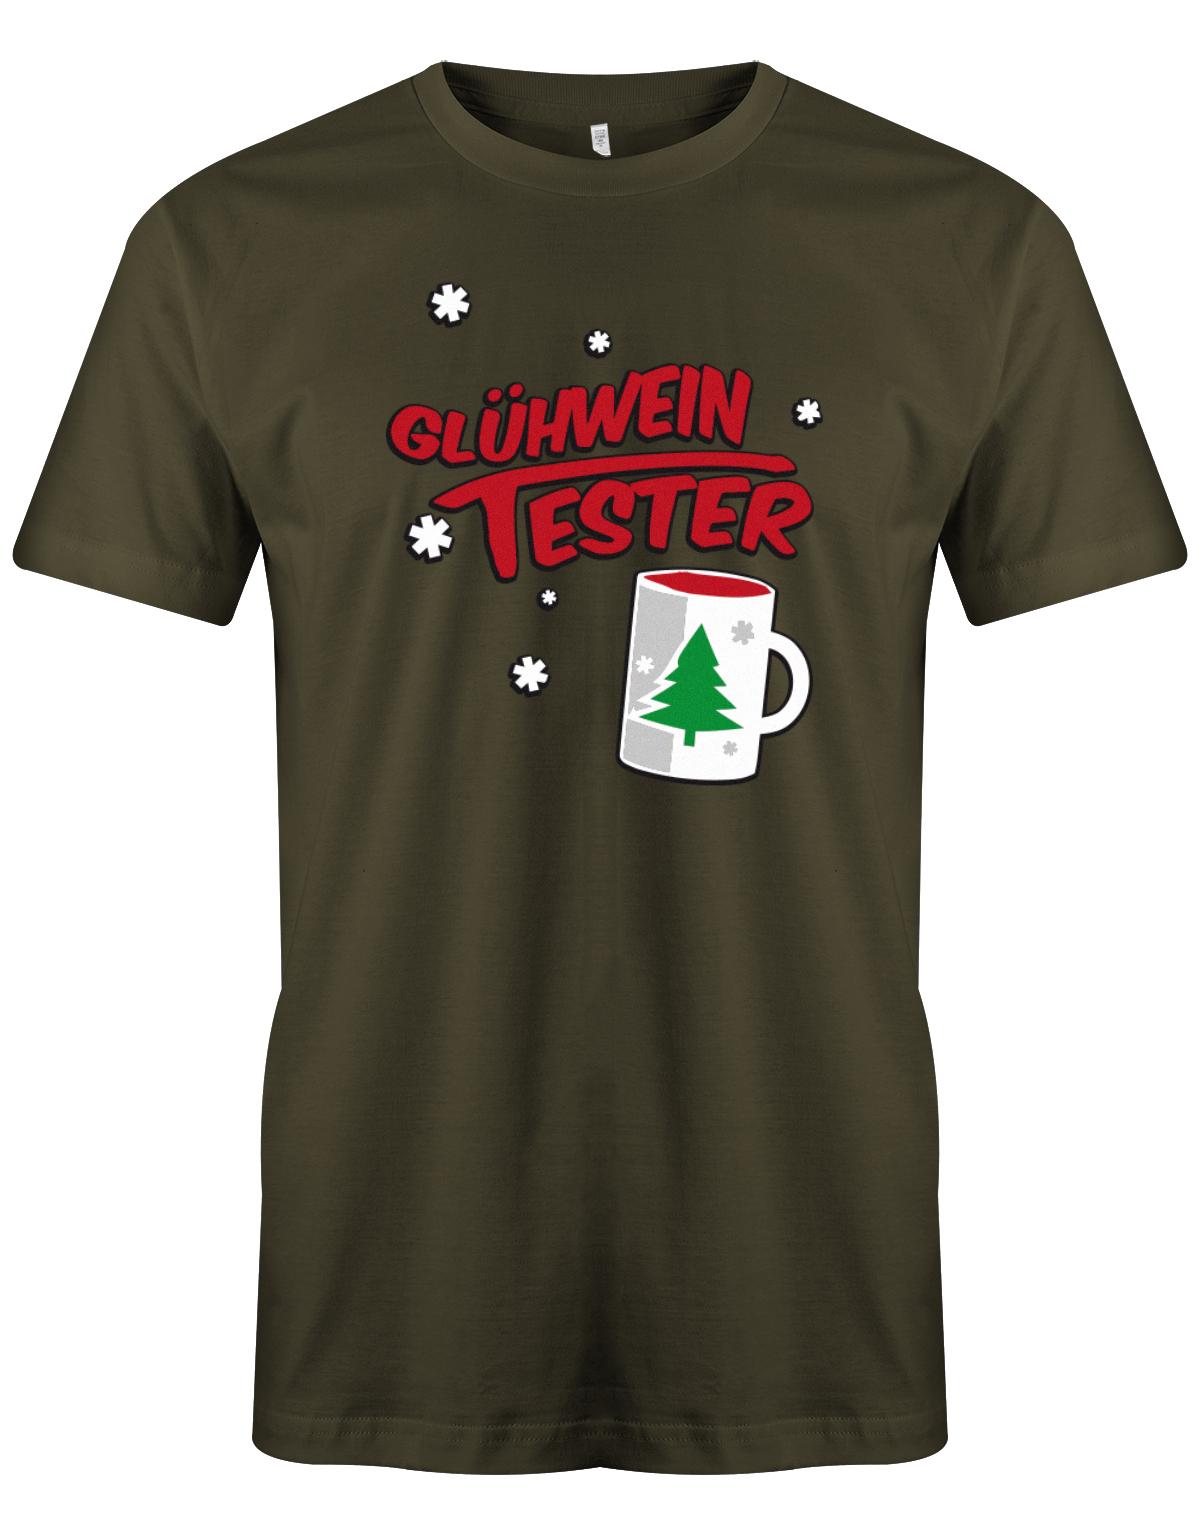 Gl-hwein-tester-Weihnachten-Shirt-Herren-Army